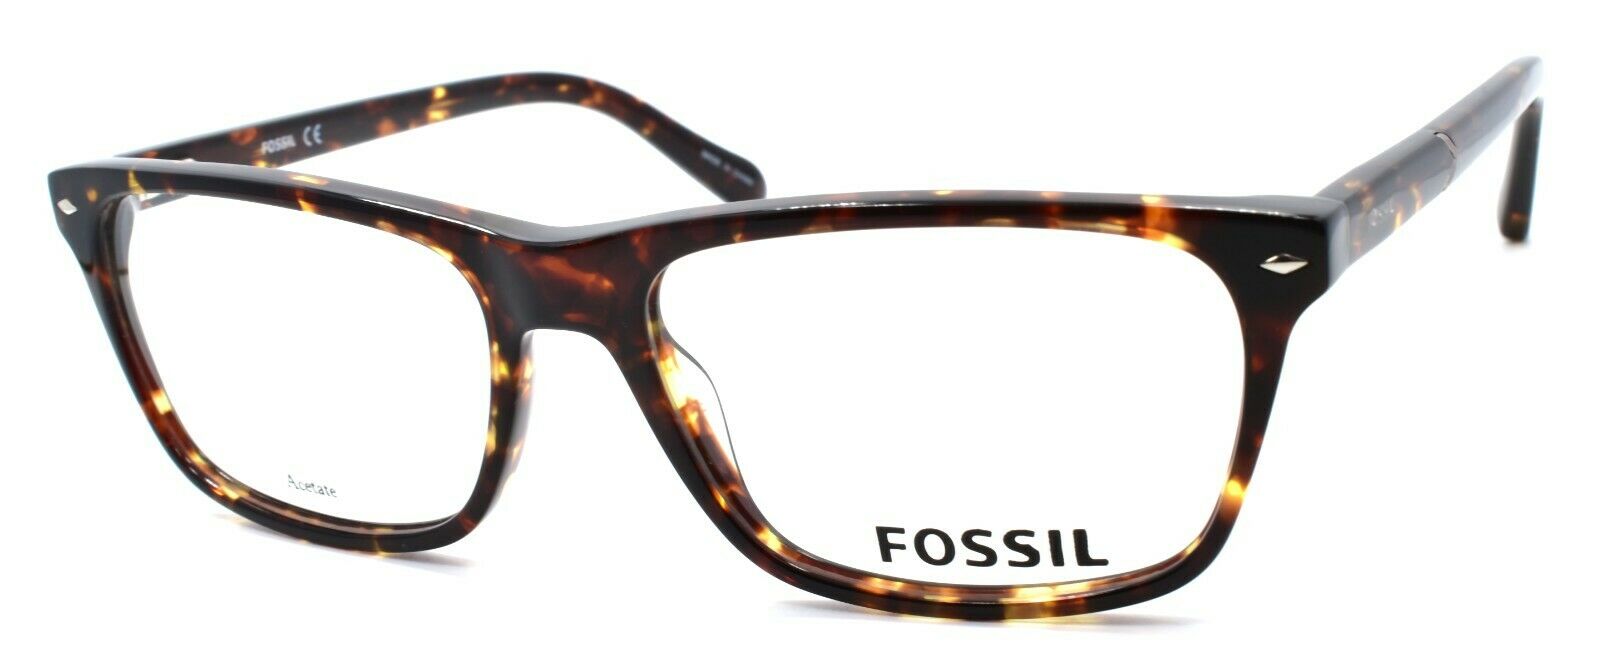 1-Fossil FOS 6086 TLF Men's Eyeglasses Frames 55-17-145 Havana Brown-762753678850-IKSpecs